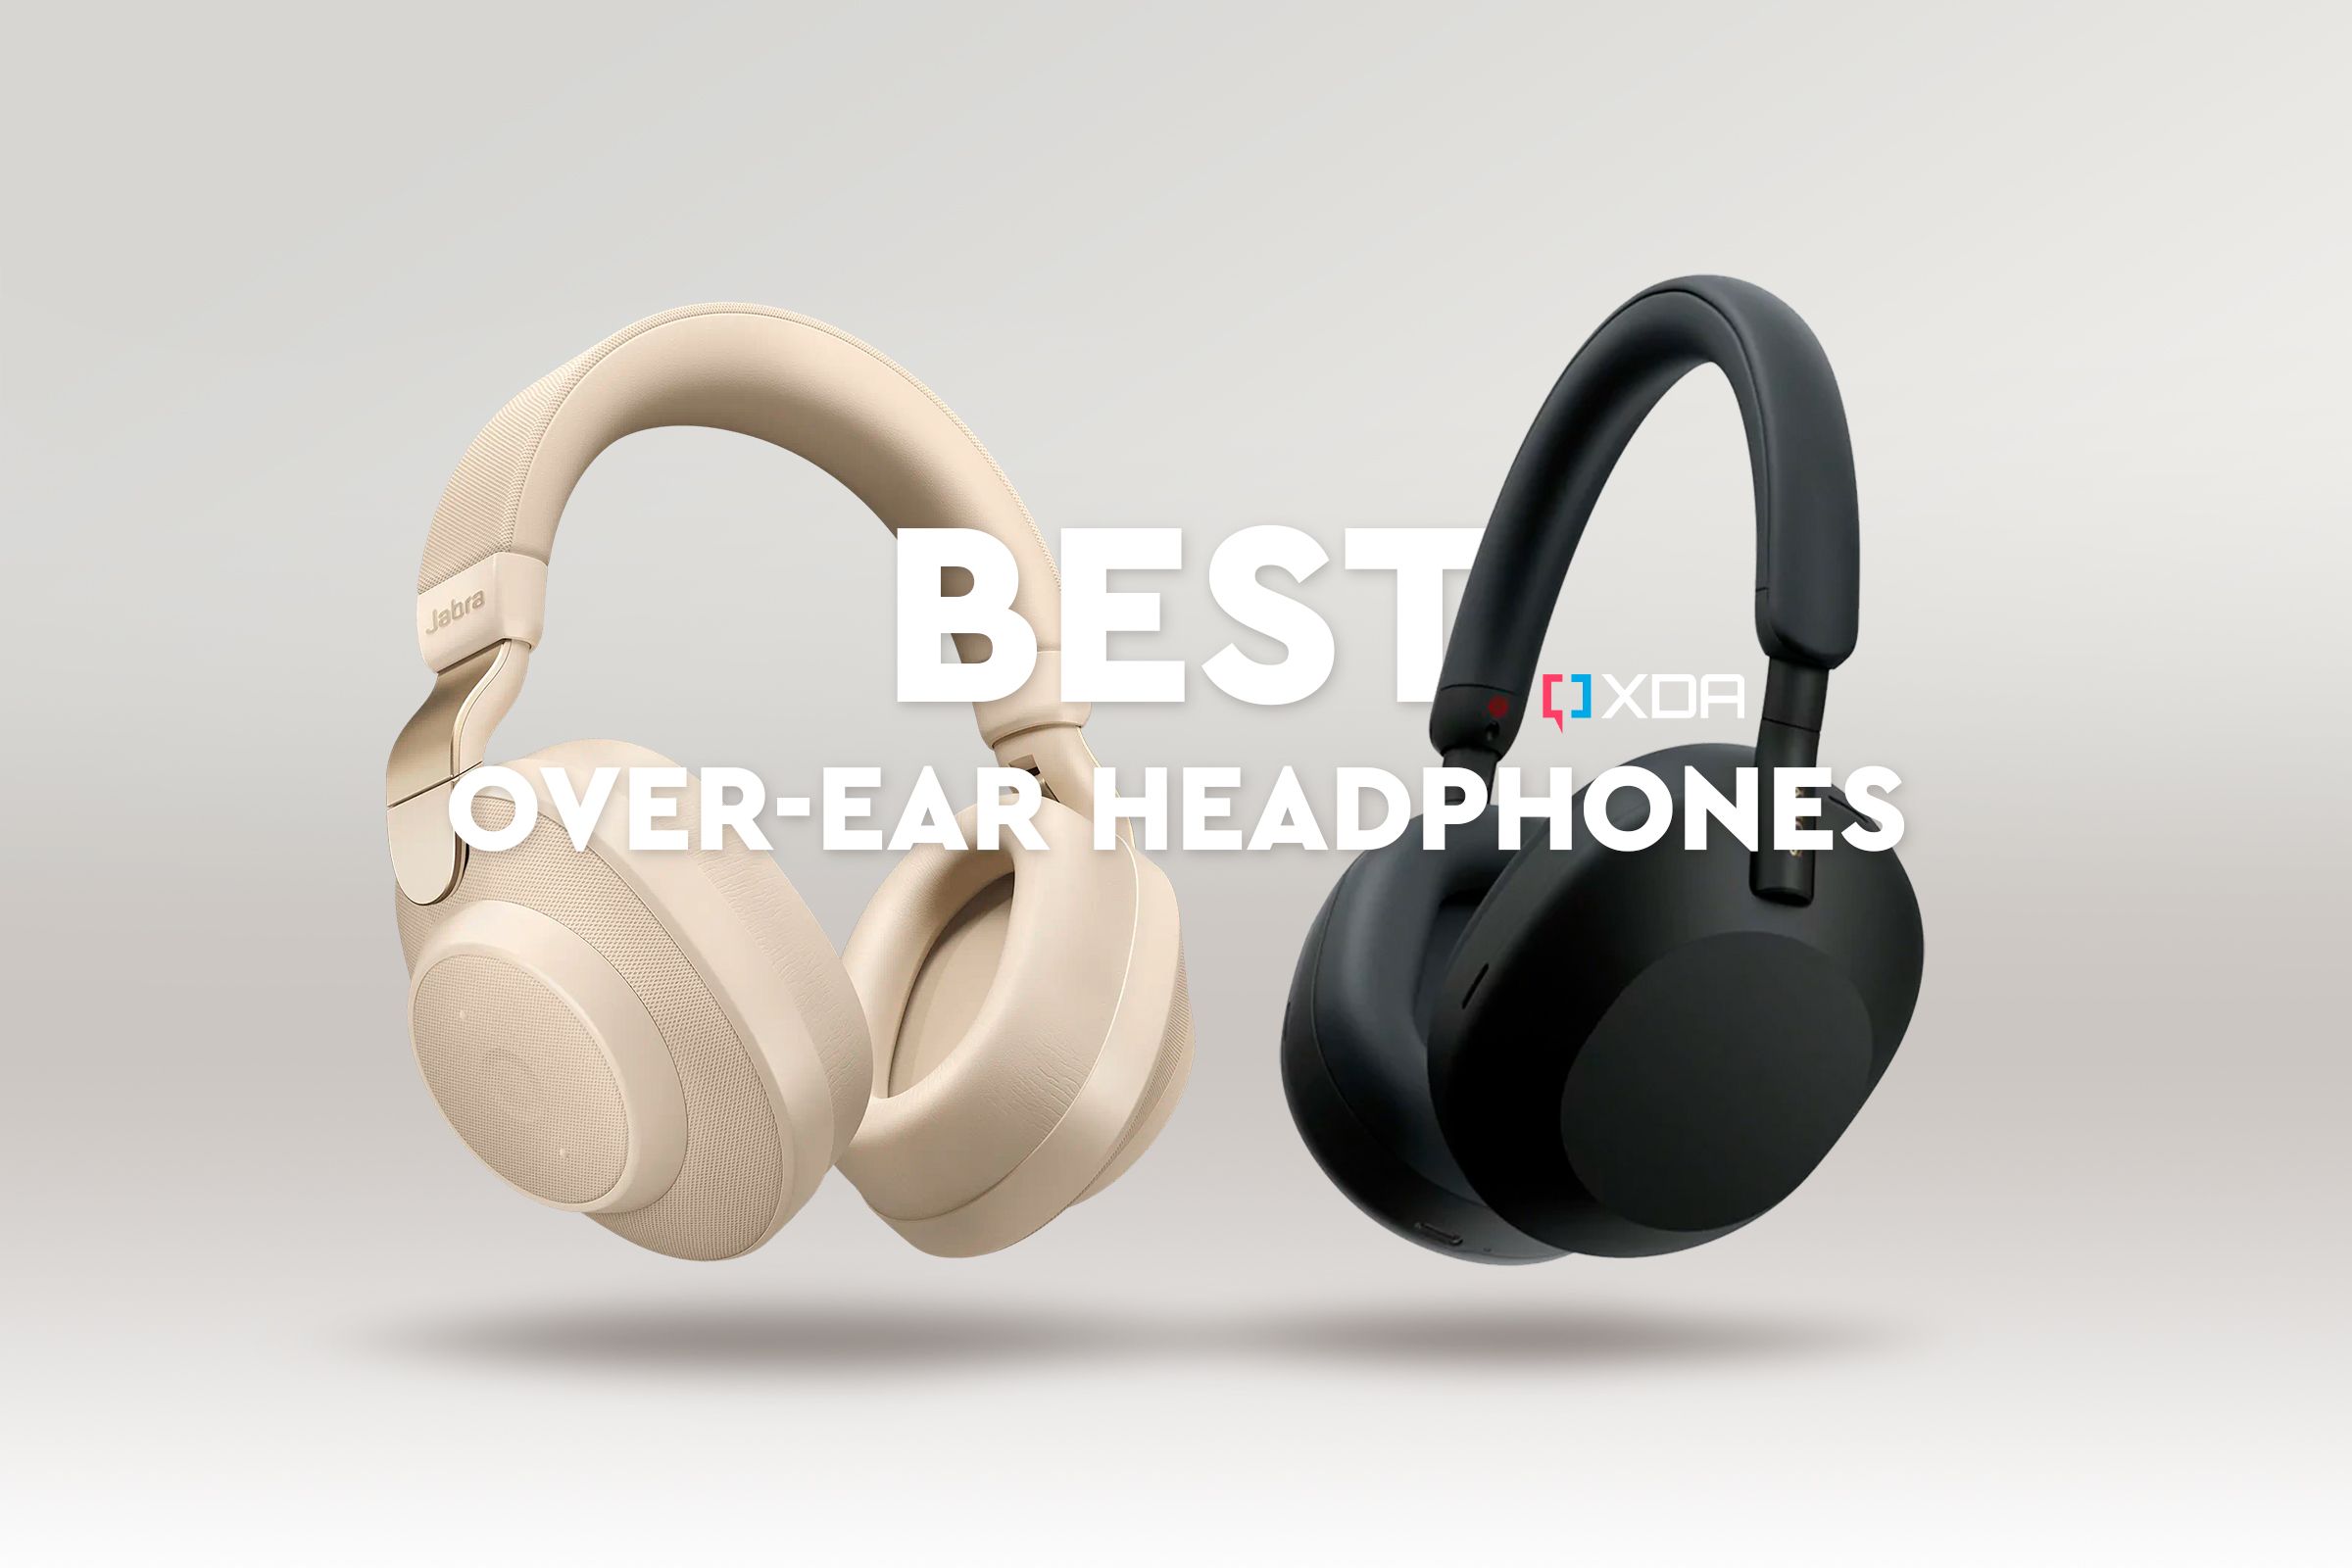 The best over-ear headphones